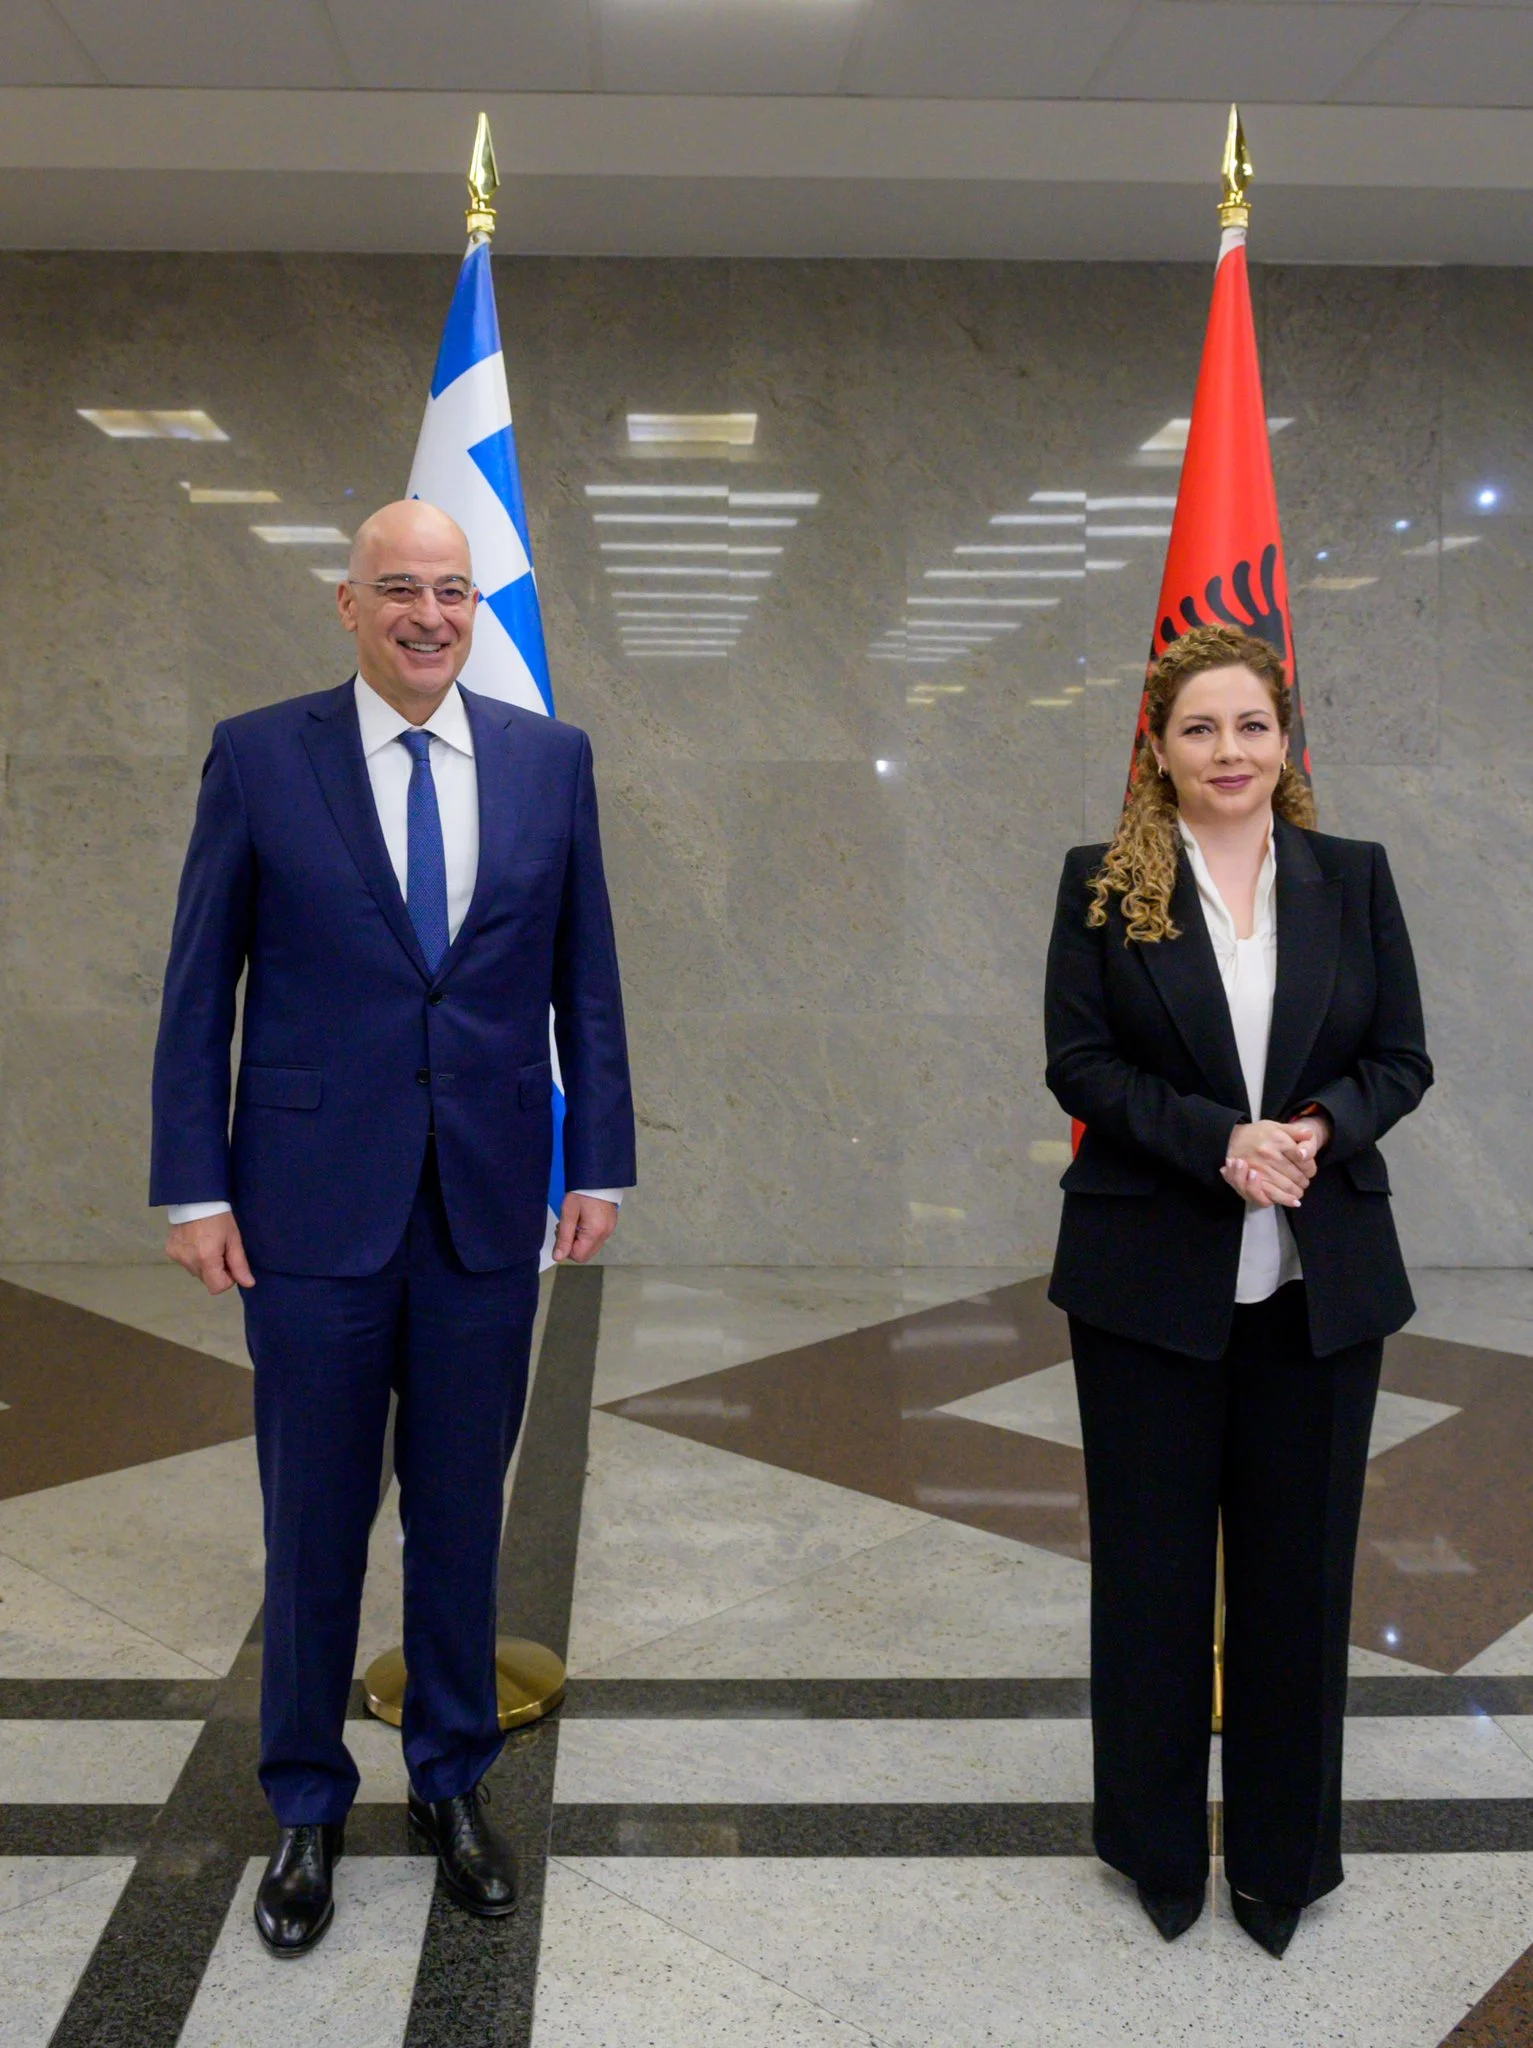 Greek Foreign Affairs Minister Nikos Dendia Albania's Minister for Europe & Foreign Affairs Olta Xhacka May 23, 2022.